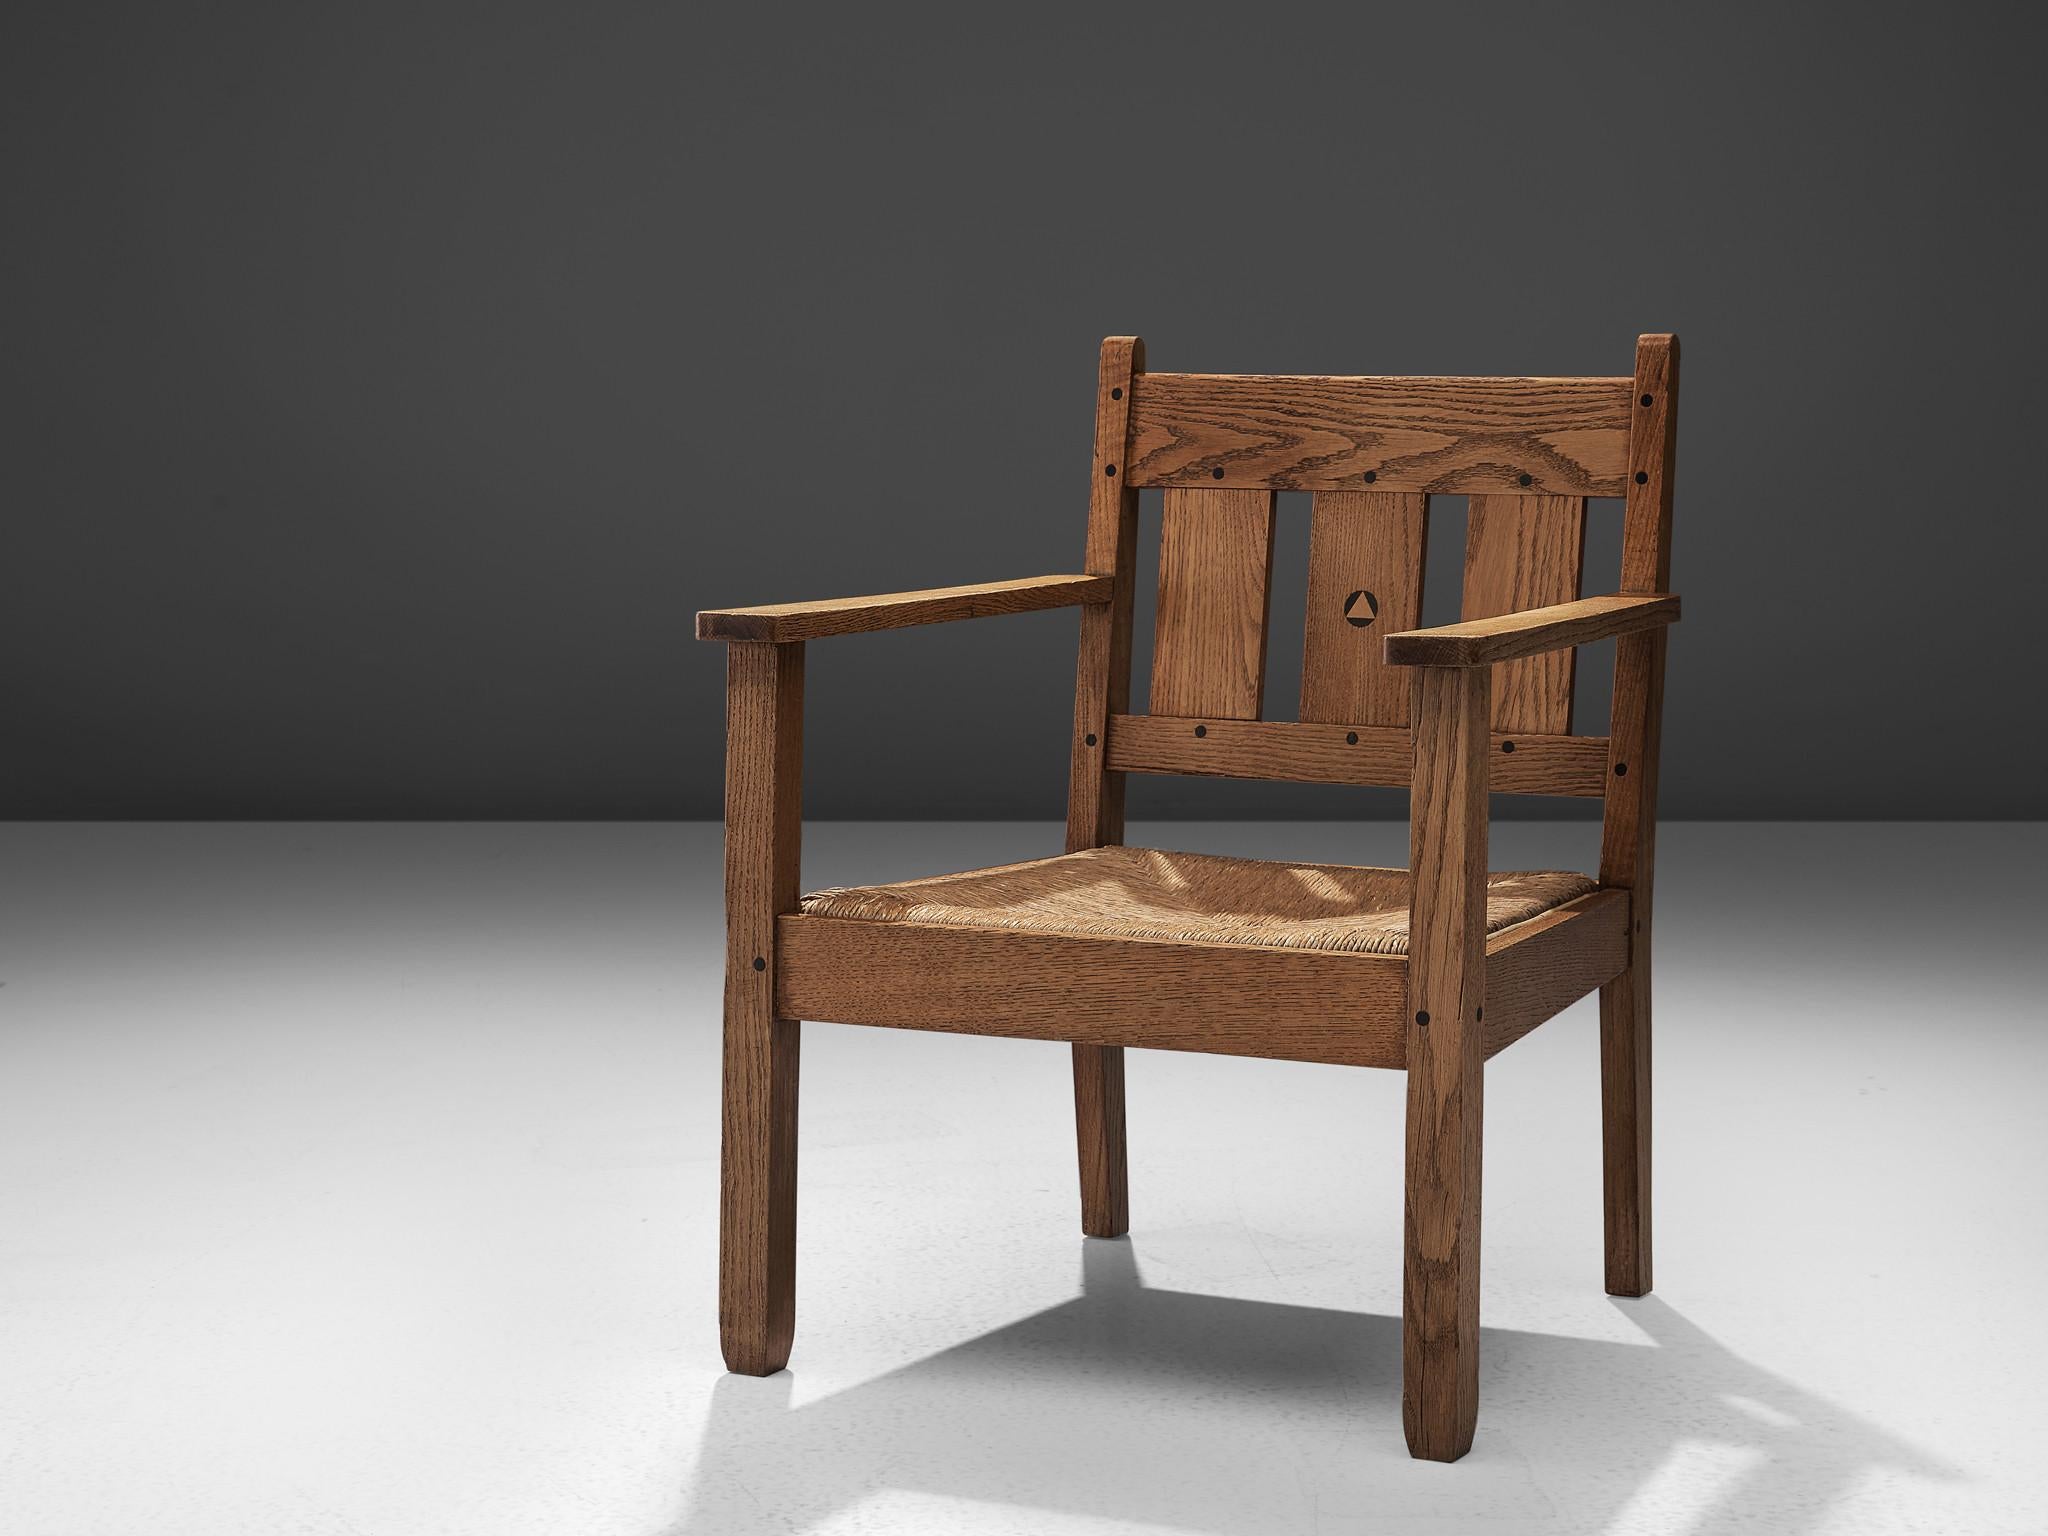 Sessel, Eiche, Seil, Niederlande, um 1910

Dieser frühe holländische Sessel aus Eichenholz ist ein Entwurf von 't Binnenhuis und wird Jac van den Bosch zugeschrieben. Der Stuhl ist stattlich, feierlich und nach den Prinzipien von 't Binnenhuis